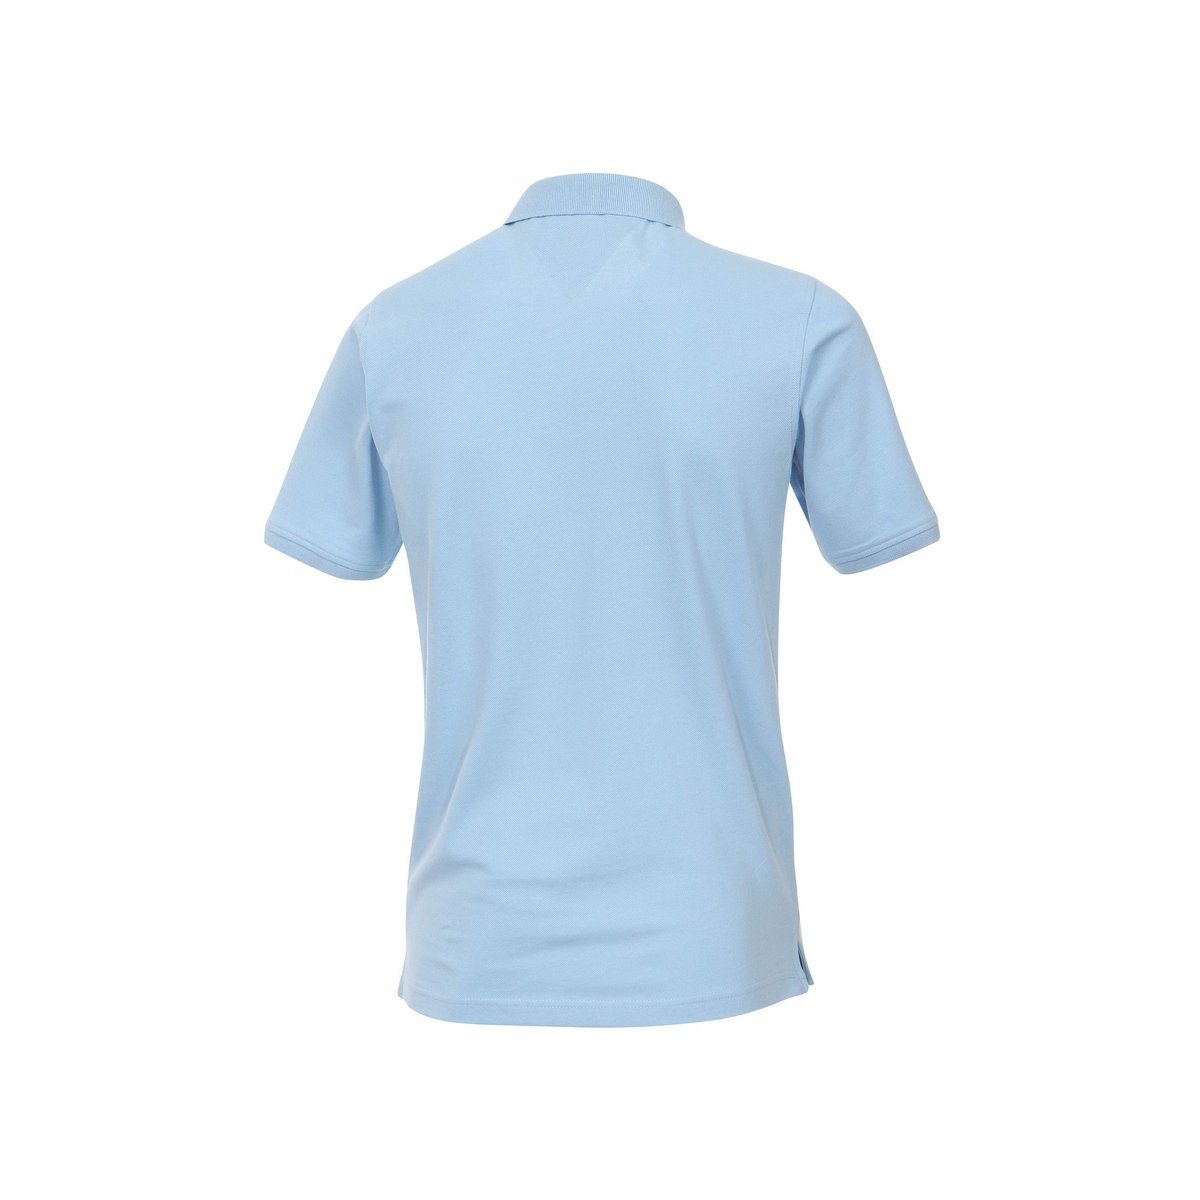 Blau(11) blau (1-tlg) Poloshirt Redmond regular